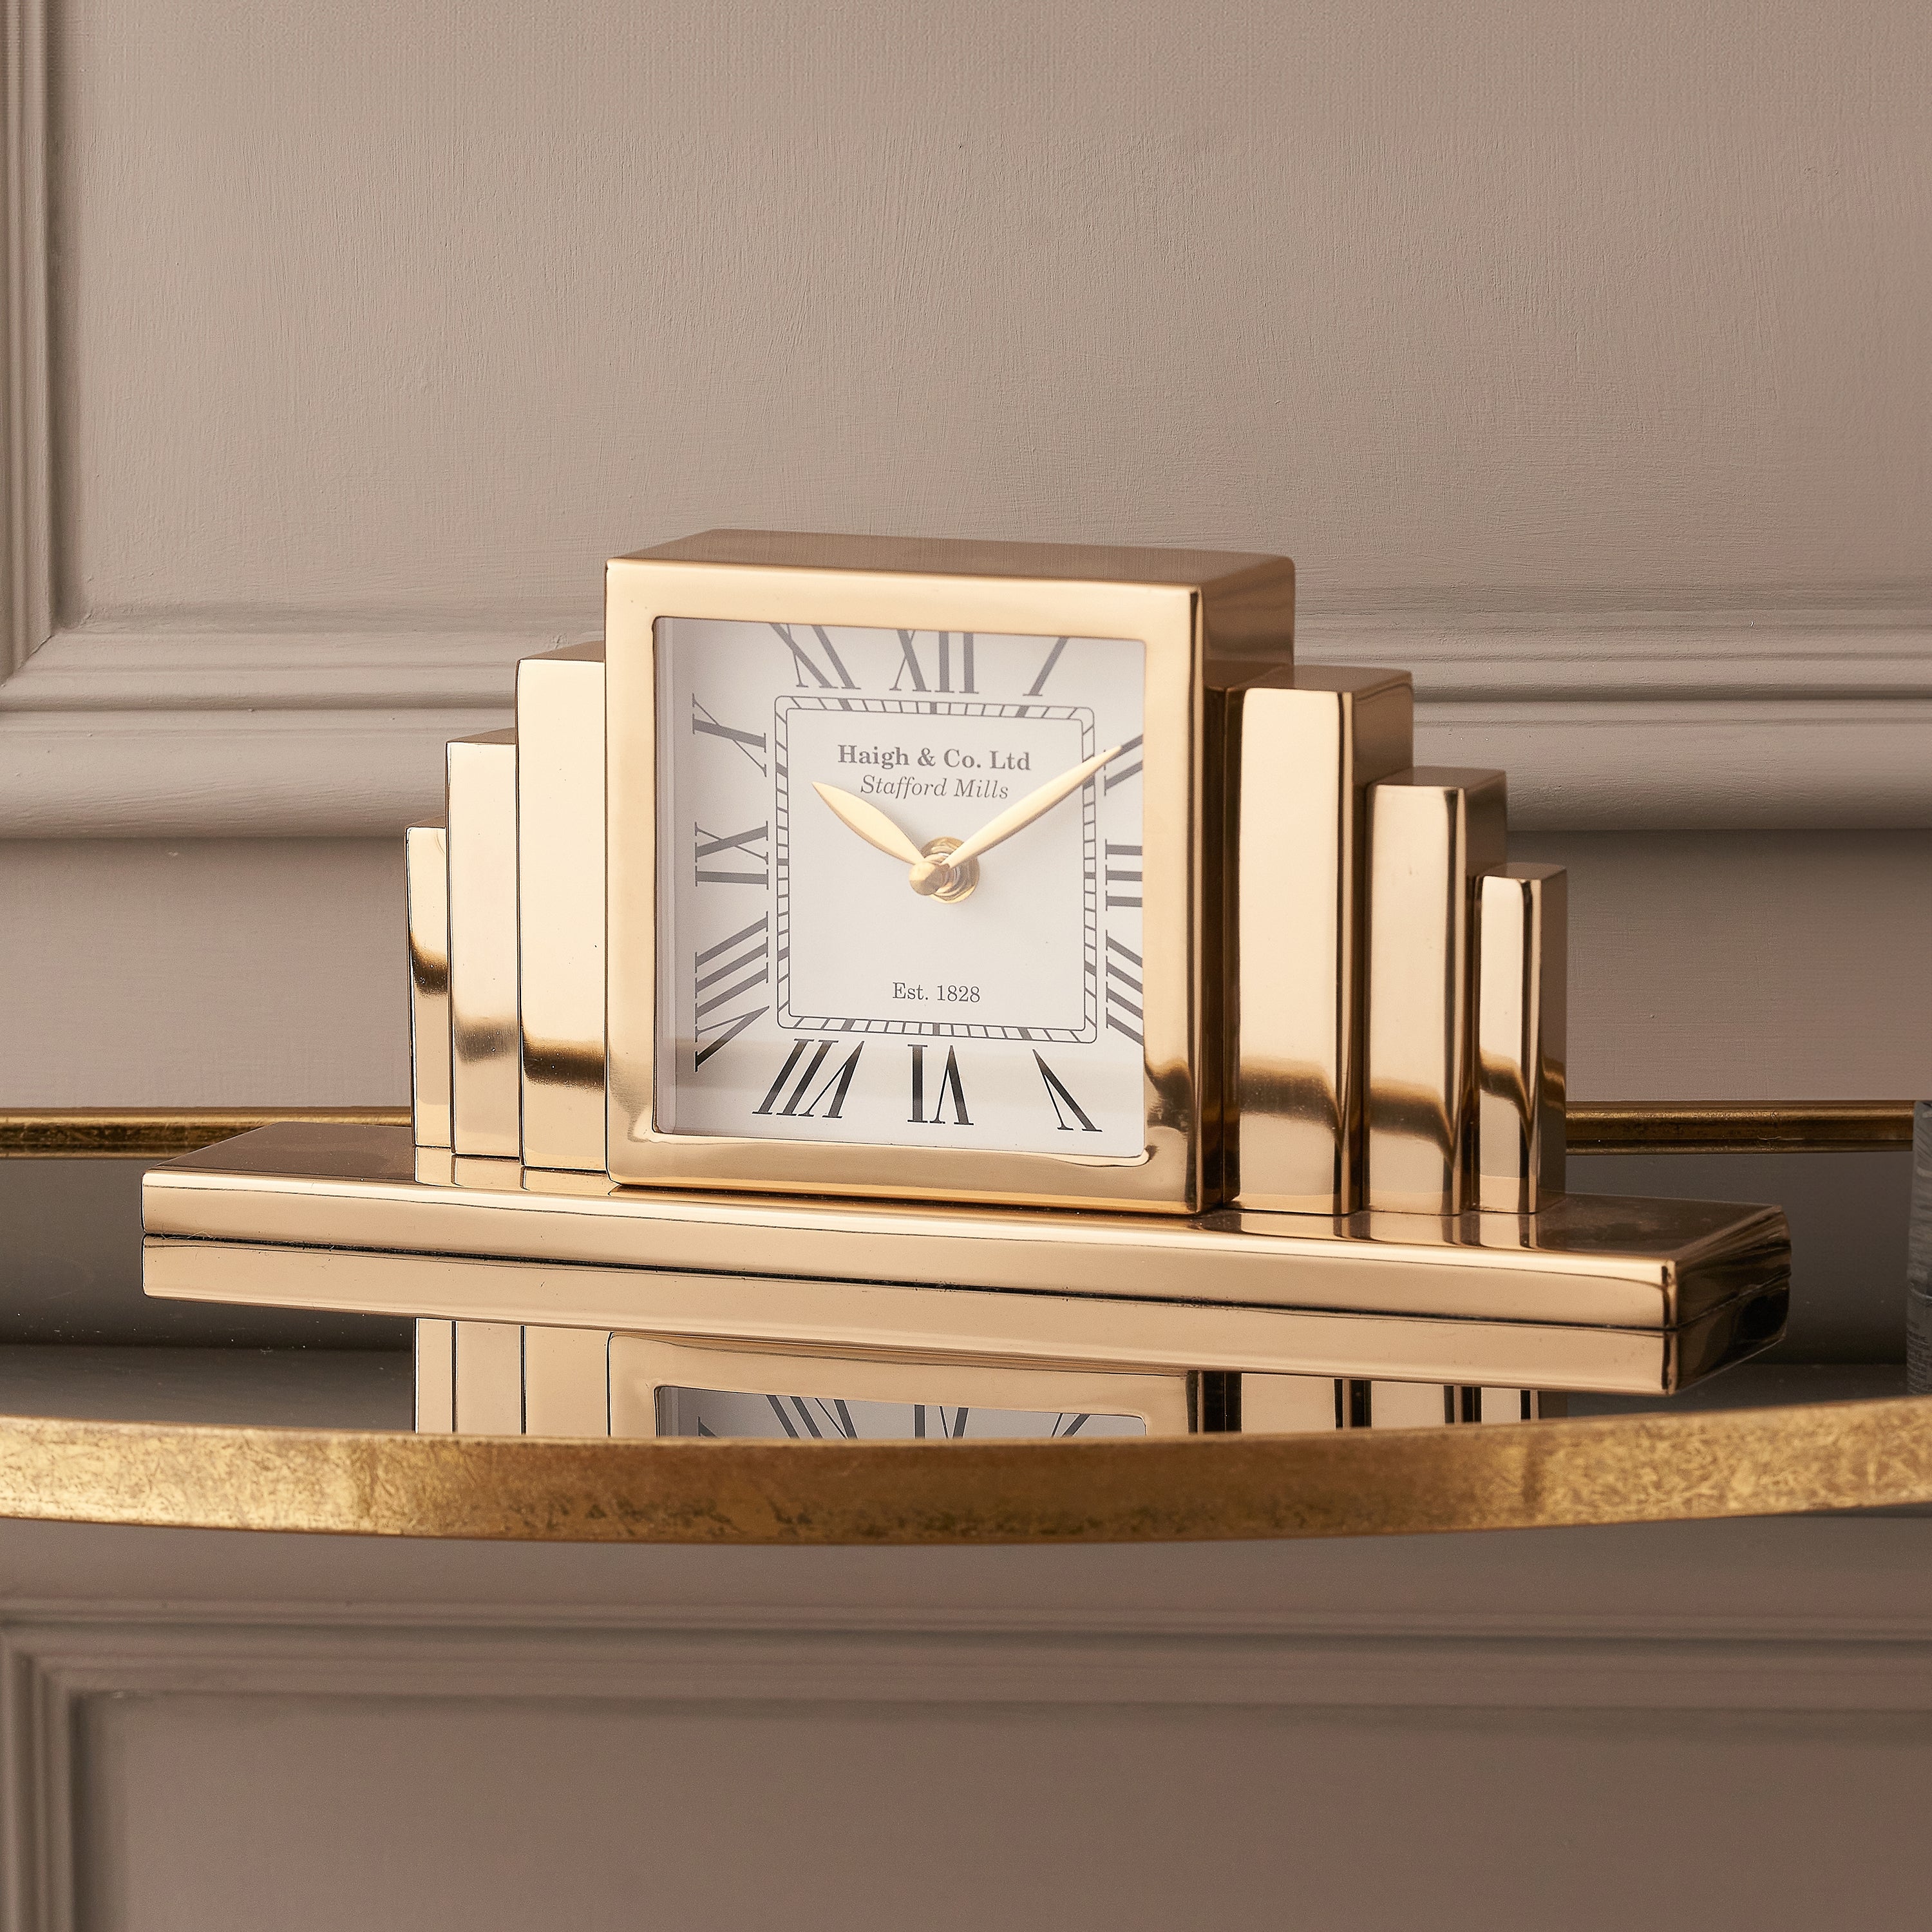 Art Deco Mantel Clock